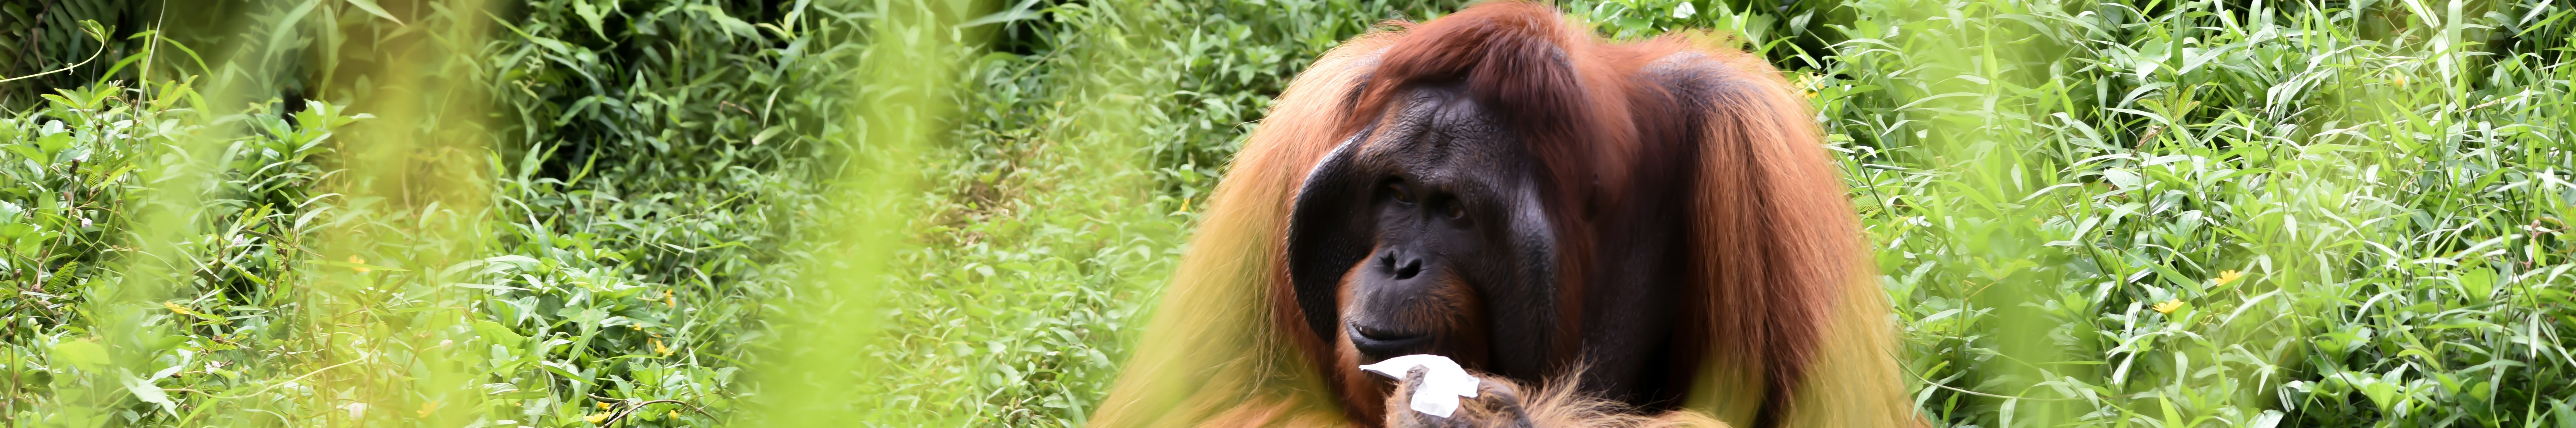 Estée Lauder Companies sourced 5,100 tonnes of palm oil in 2021, causing biodiversity risks